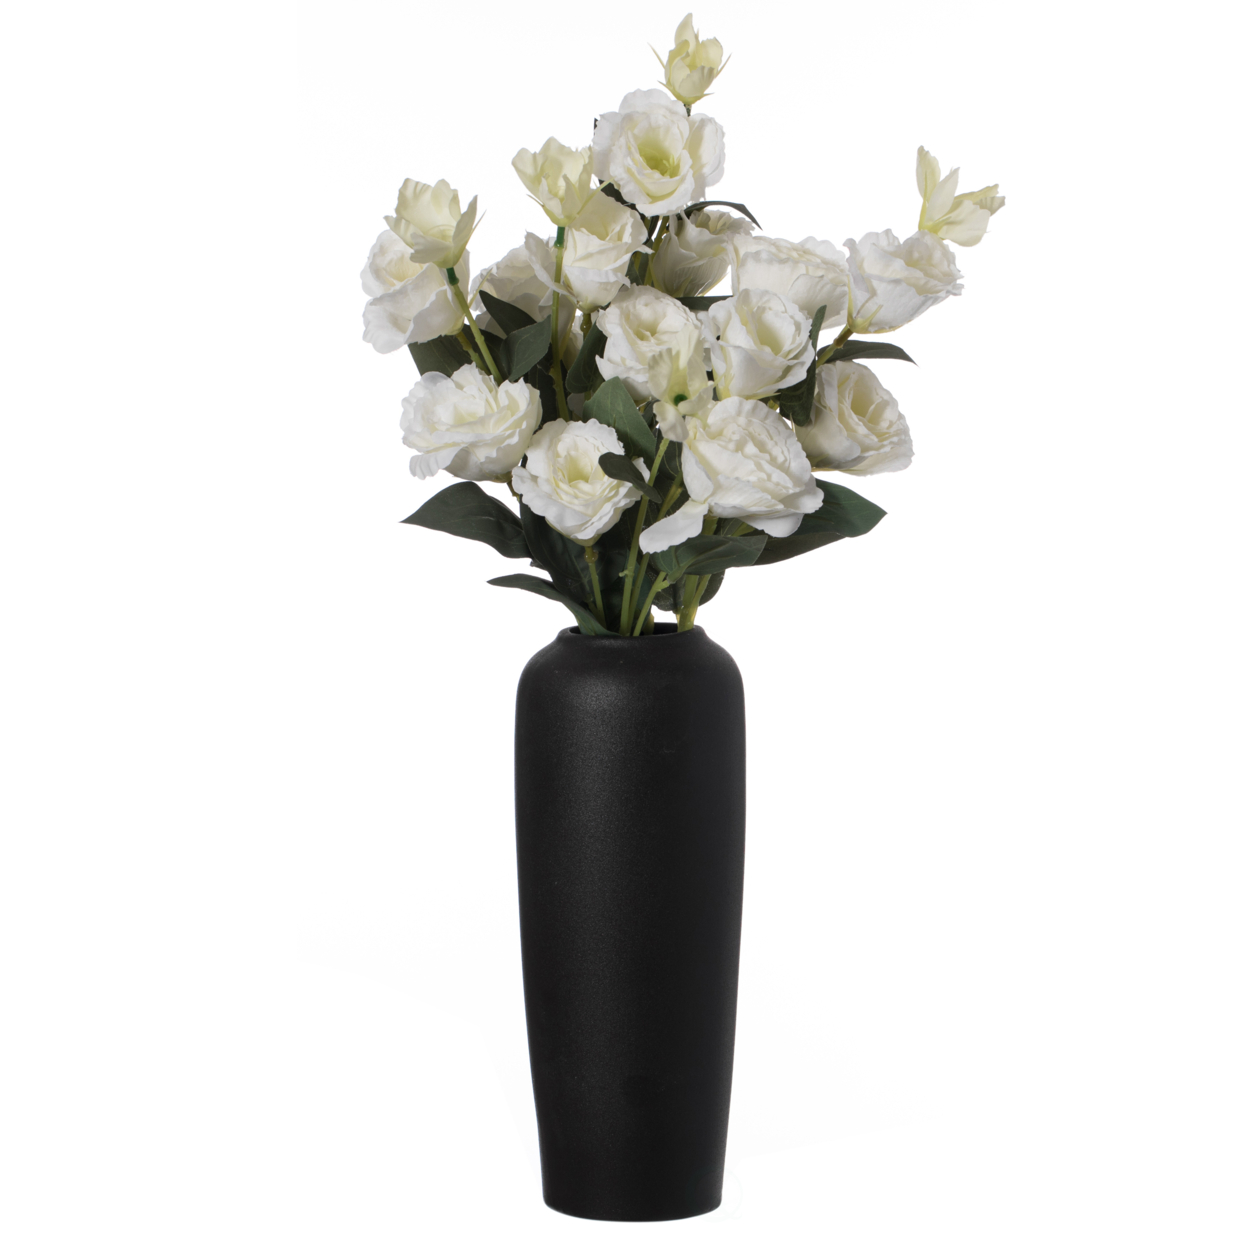 Contemporary Black Ceramic Cylinder Shaped Table Flower Vase Holder - Large